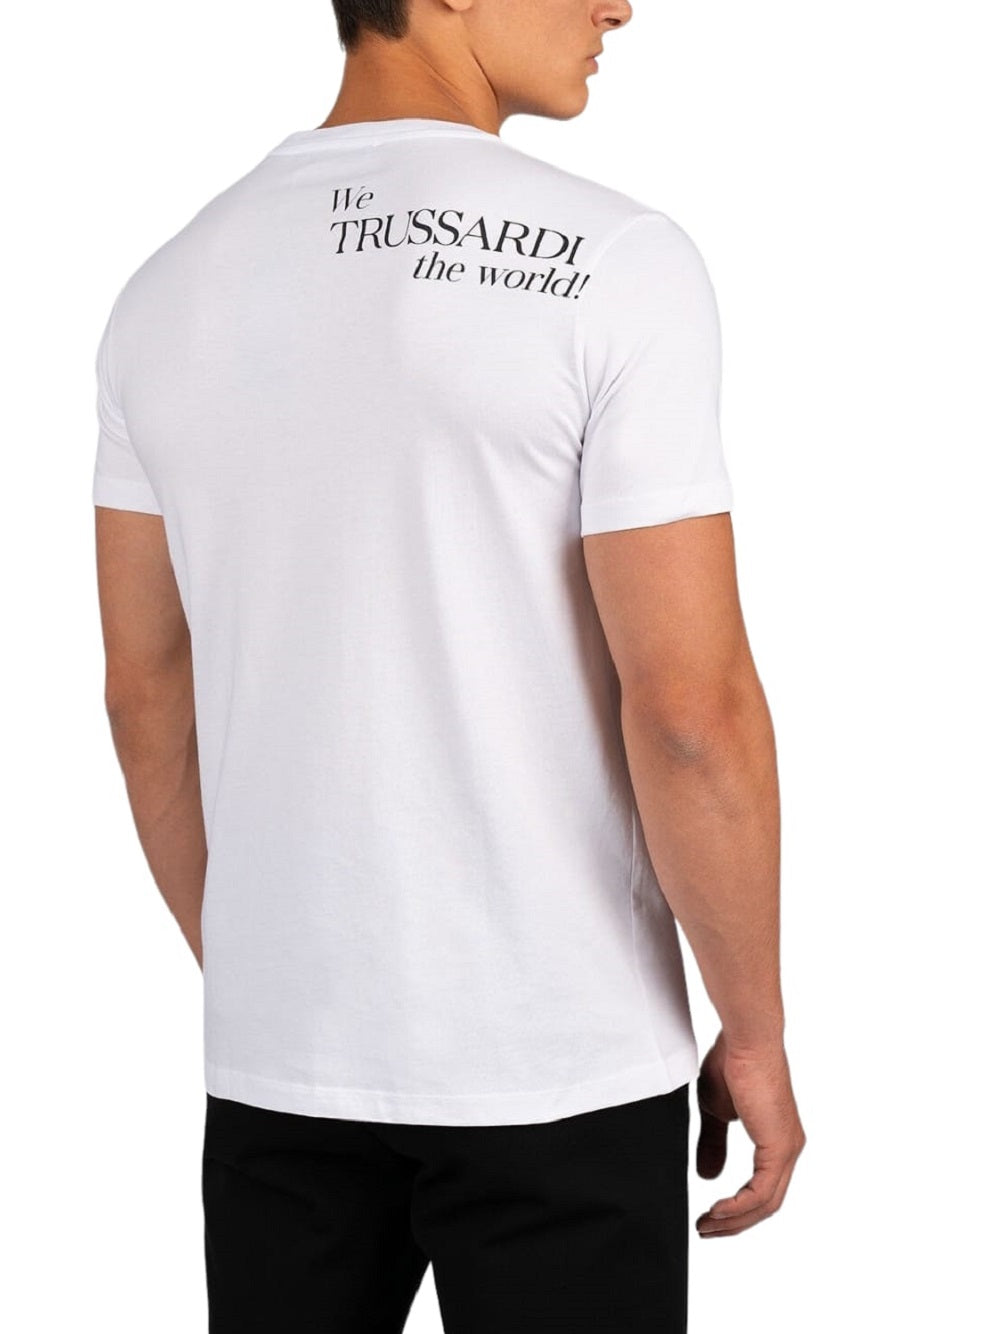 T-shirt TRUSSARDI Print modello 52T00532 Regular Fit